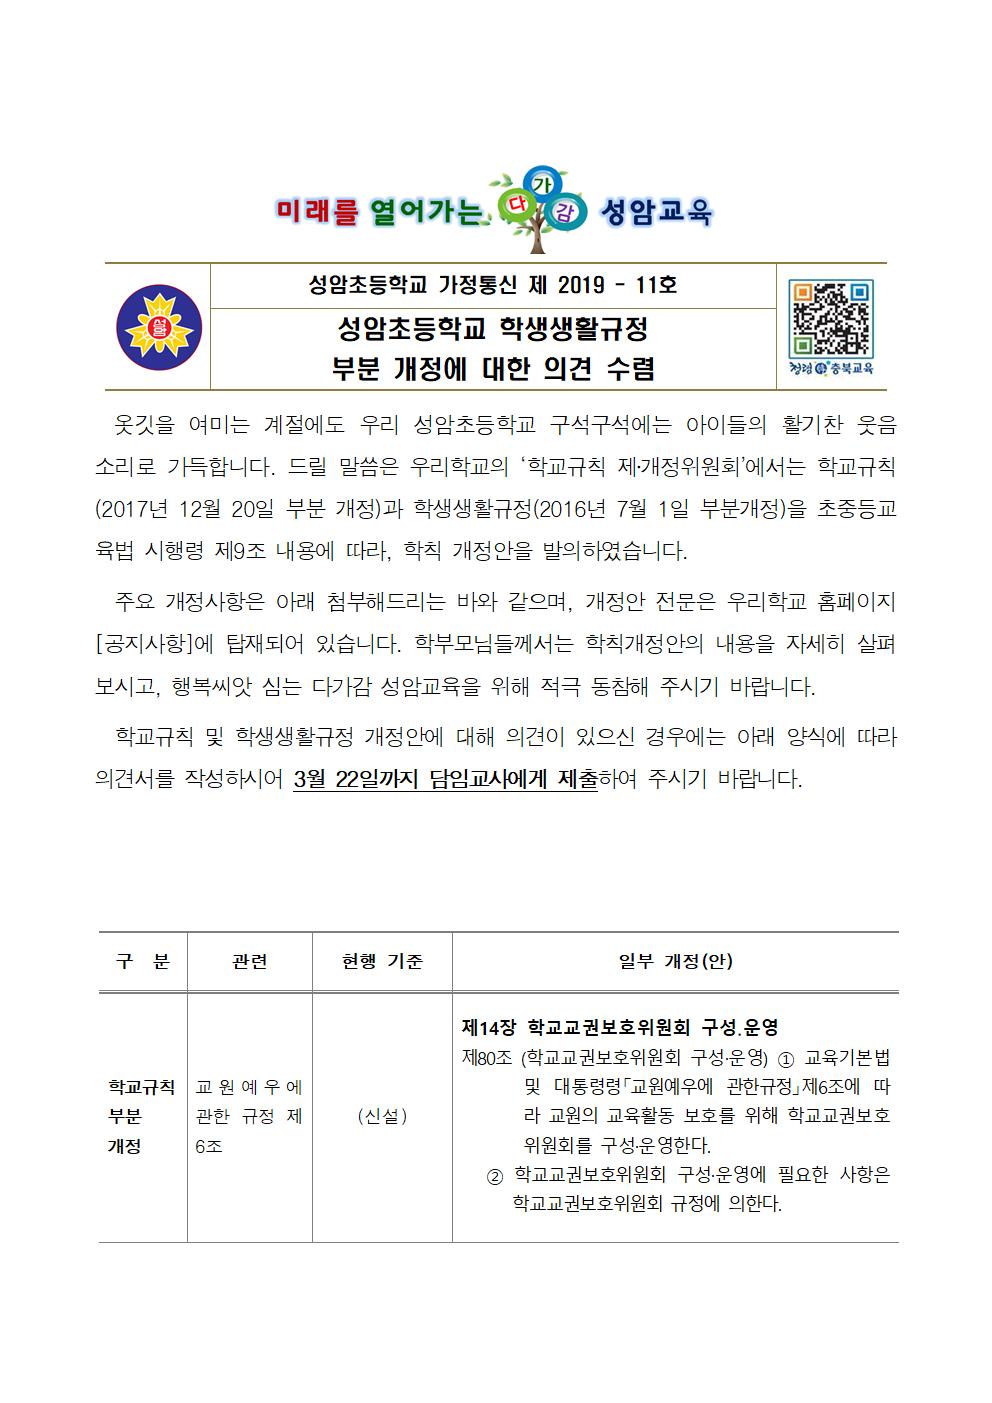 (가정통신문)2019_학생생활규정 부분 개정 안내2001